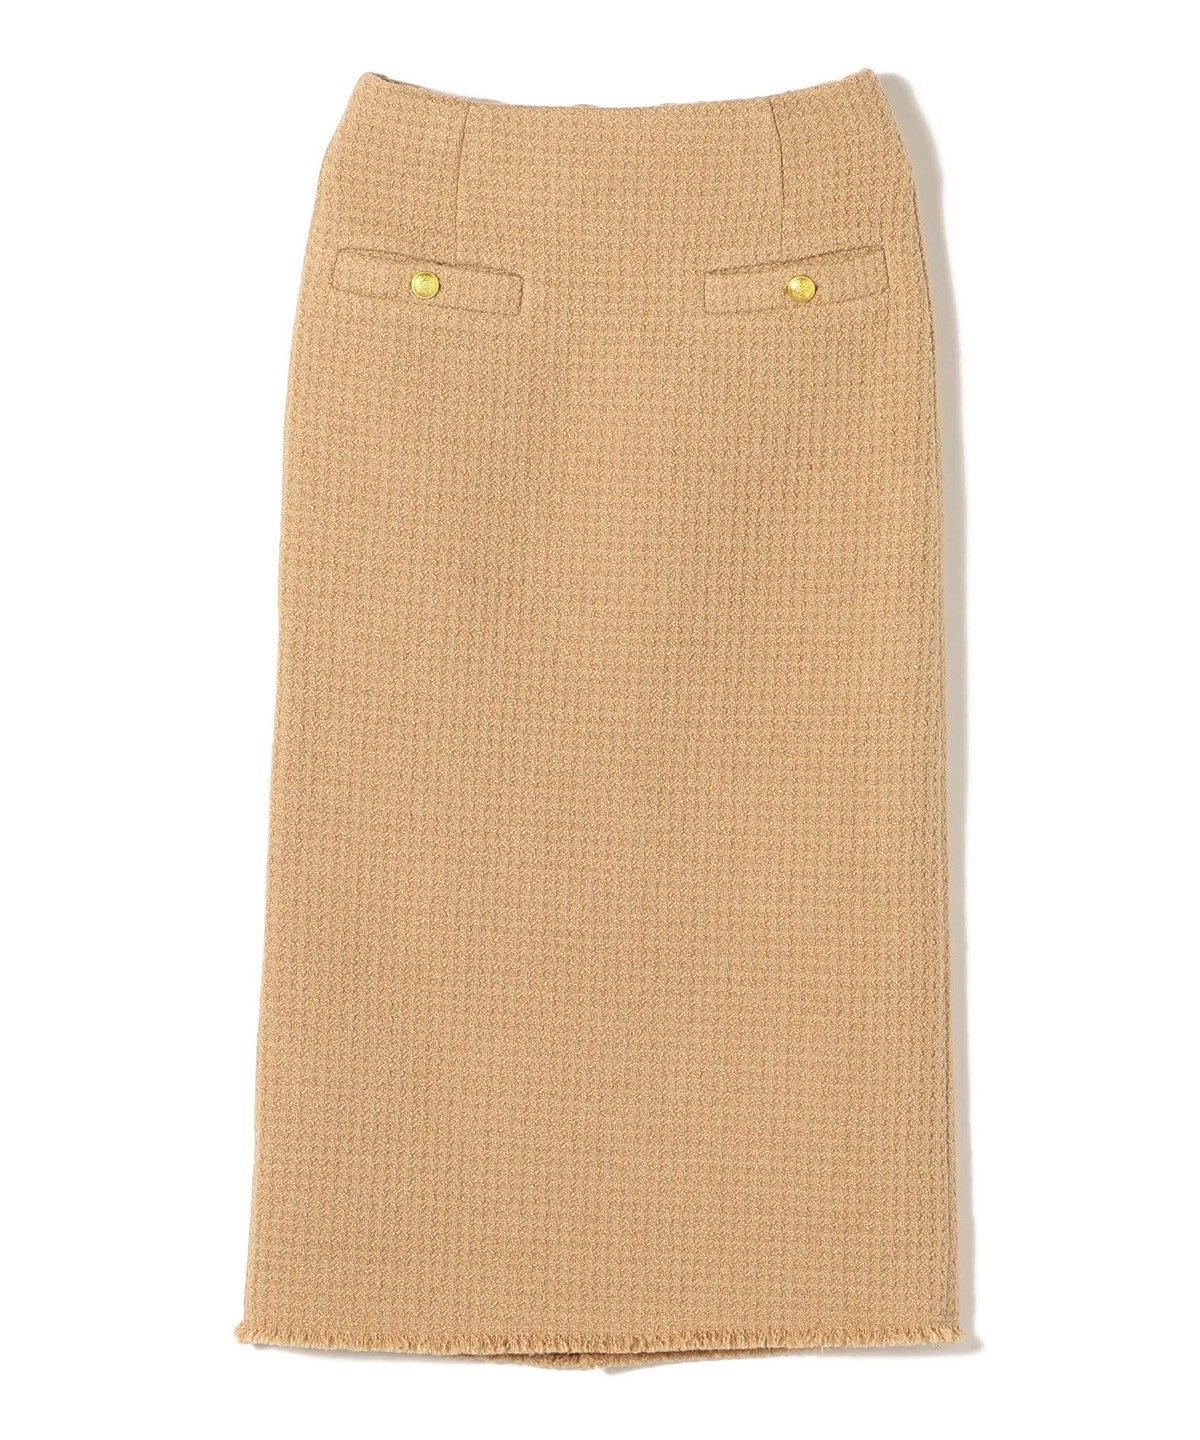 ツイード ポケット デザイン スカート ◇: スカート SHIPS 公式サイト 